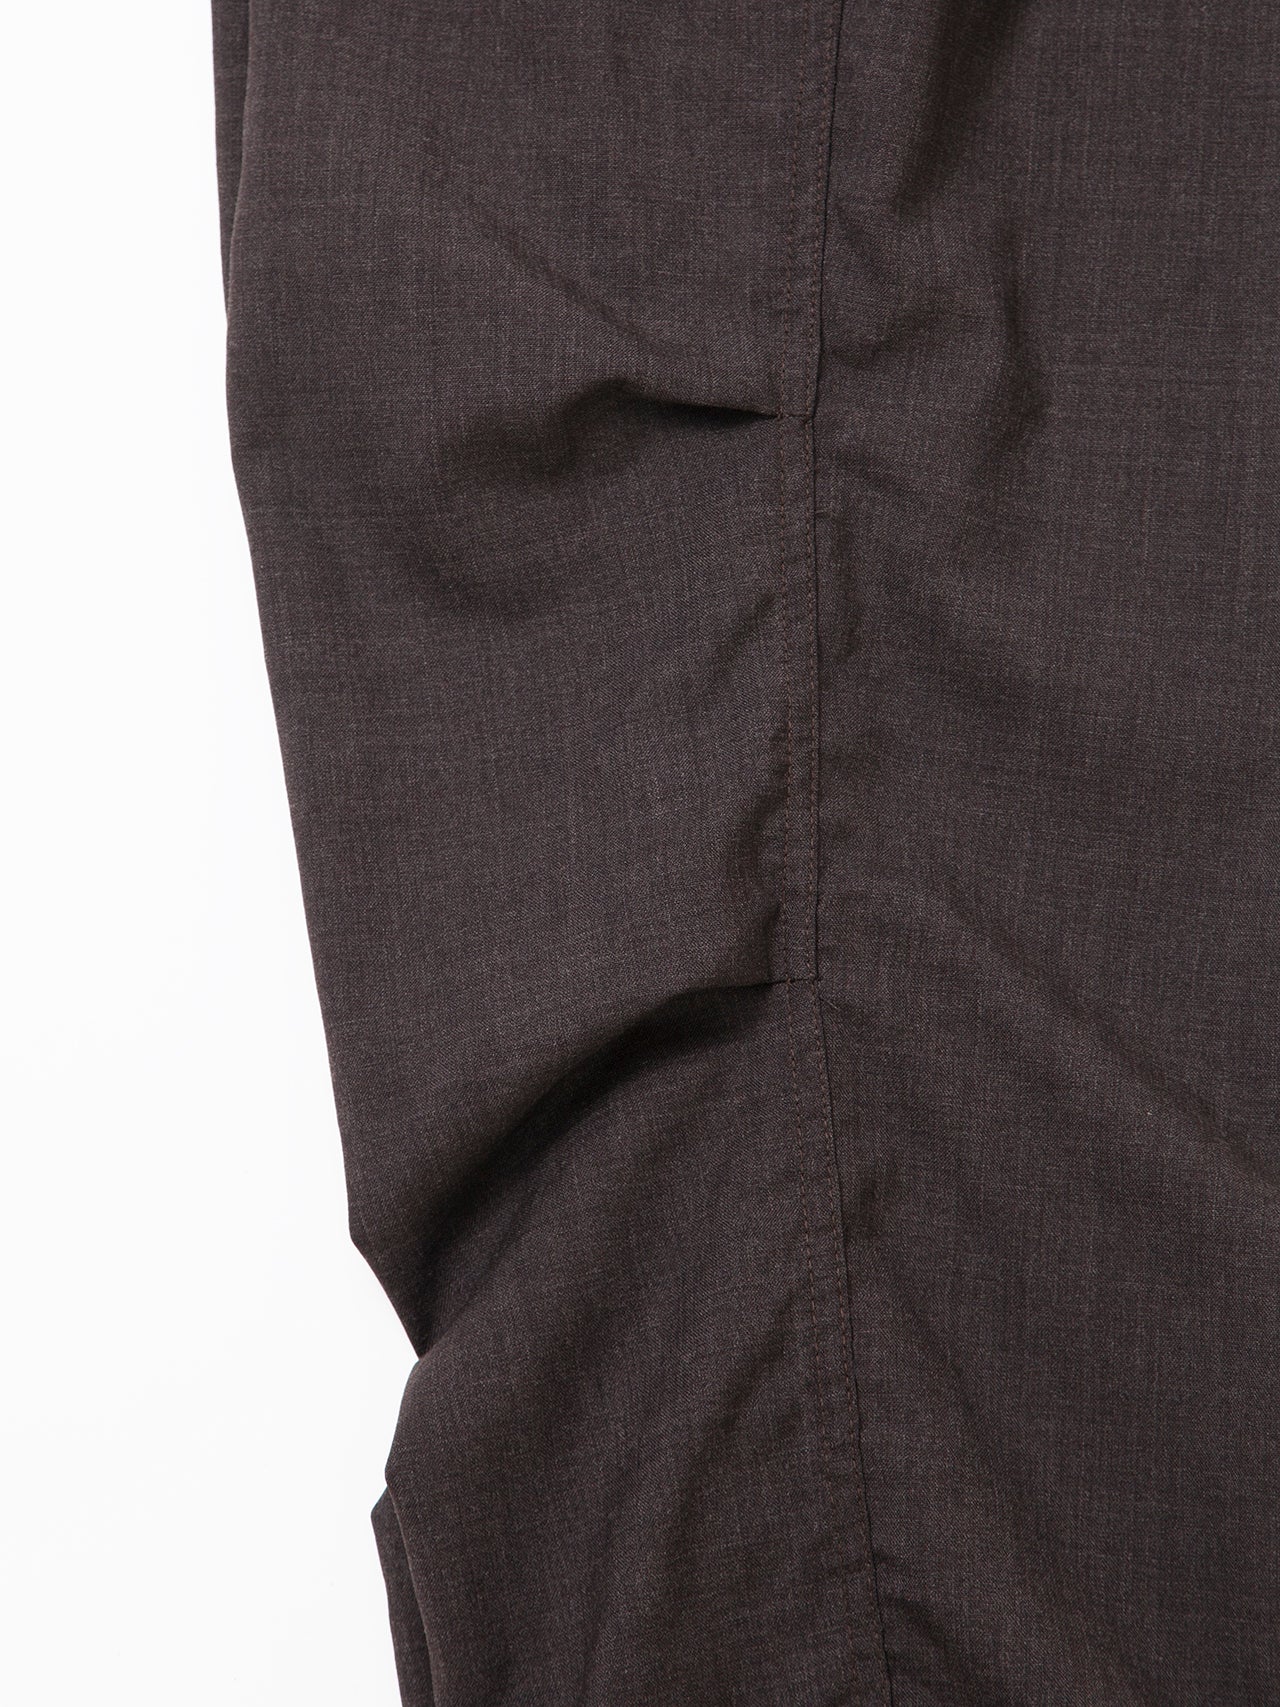 FP005E - FATIGUE SLACKS "AGGRESSOR EASY SLACKS" / Wool Tropical Cloth - Brown